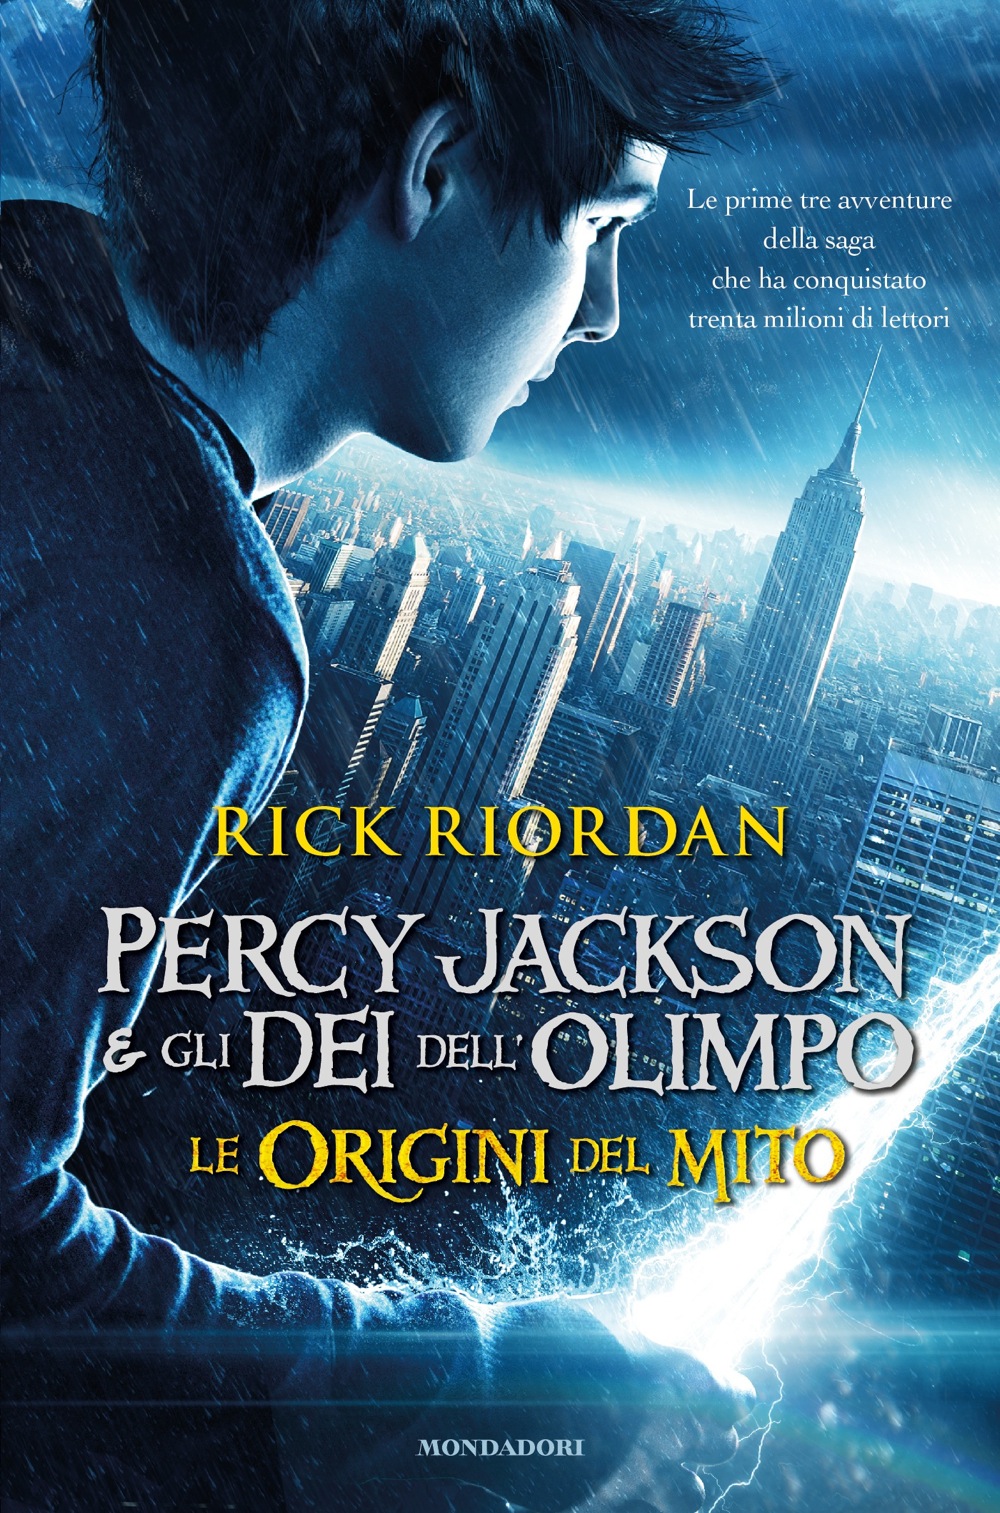 Recensione Del Libro Percy Jackson E Gli Dei Dell Olimpo